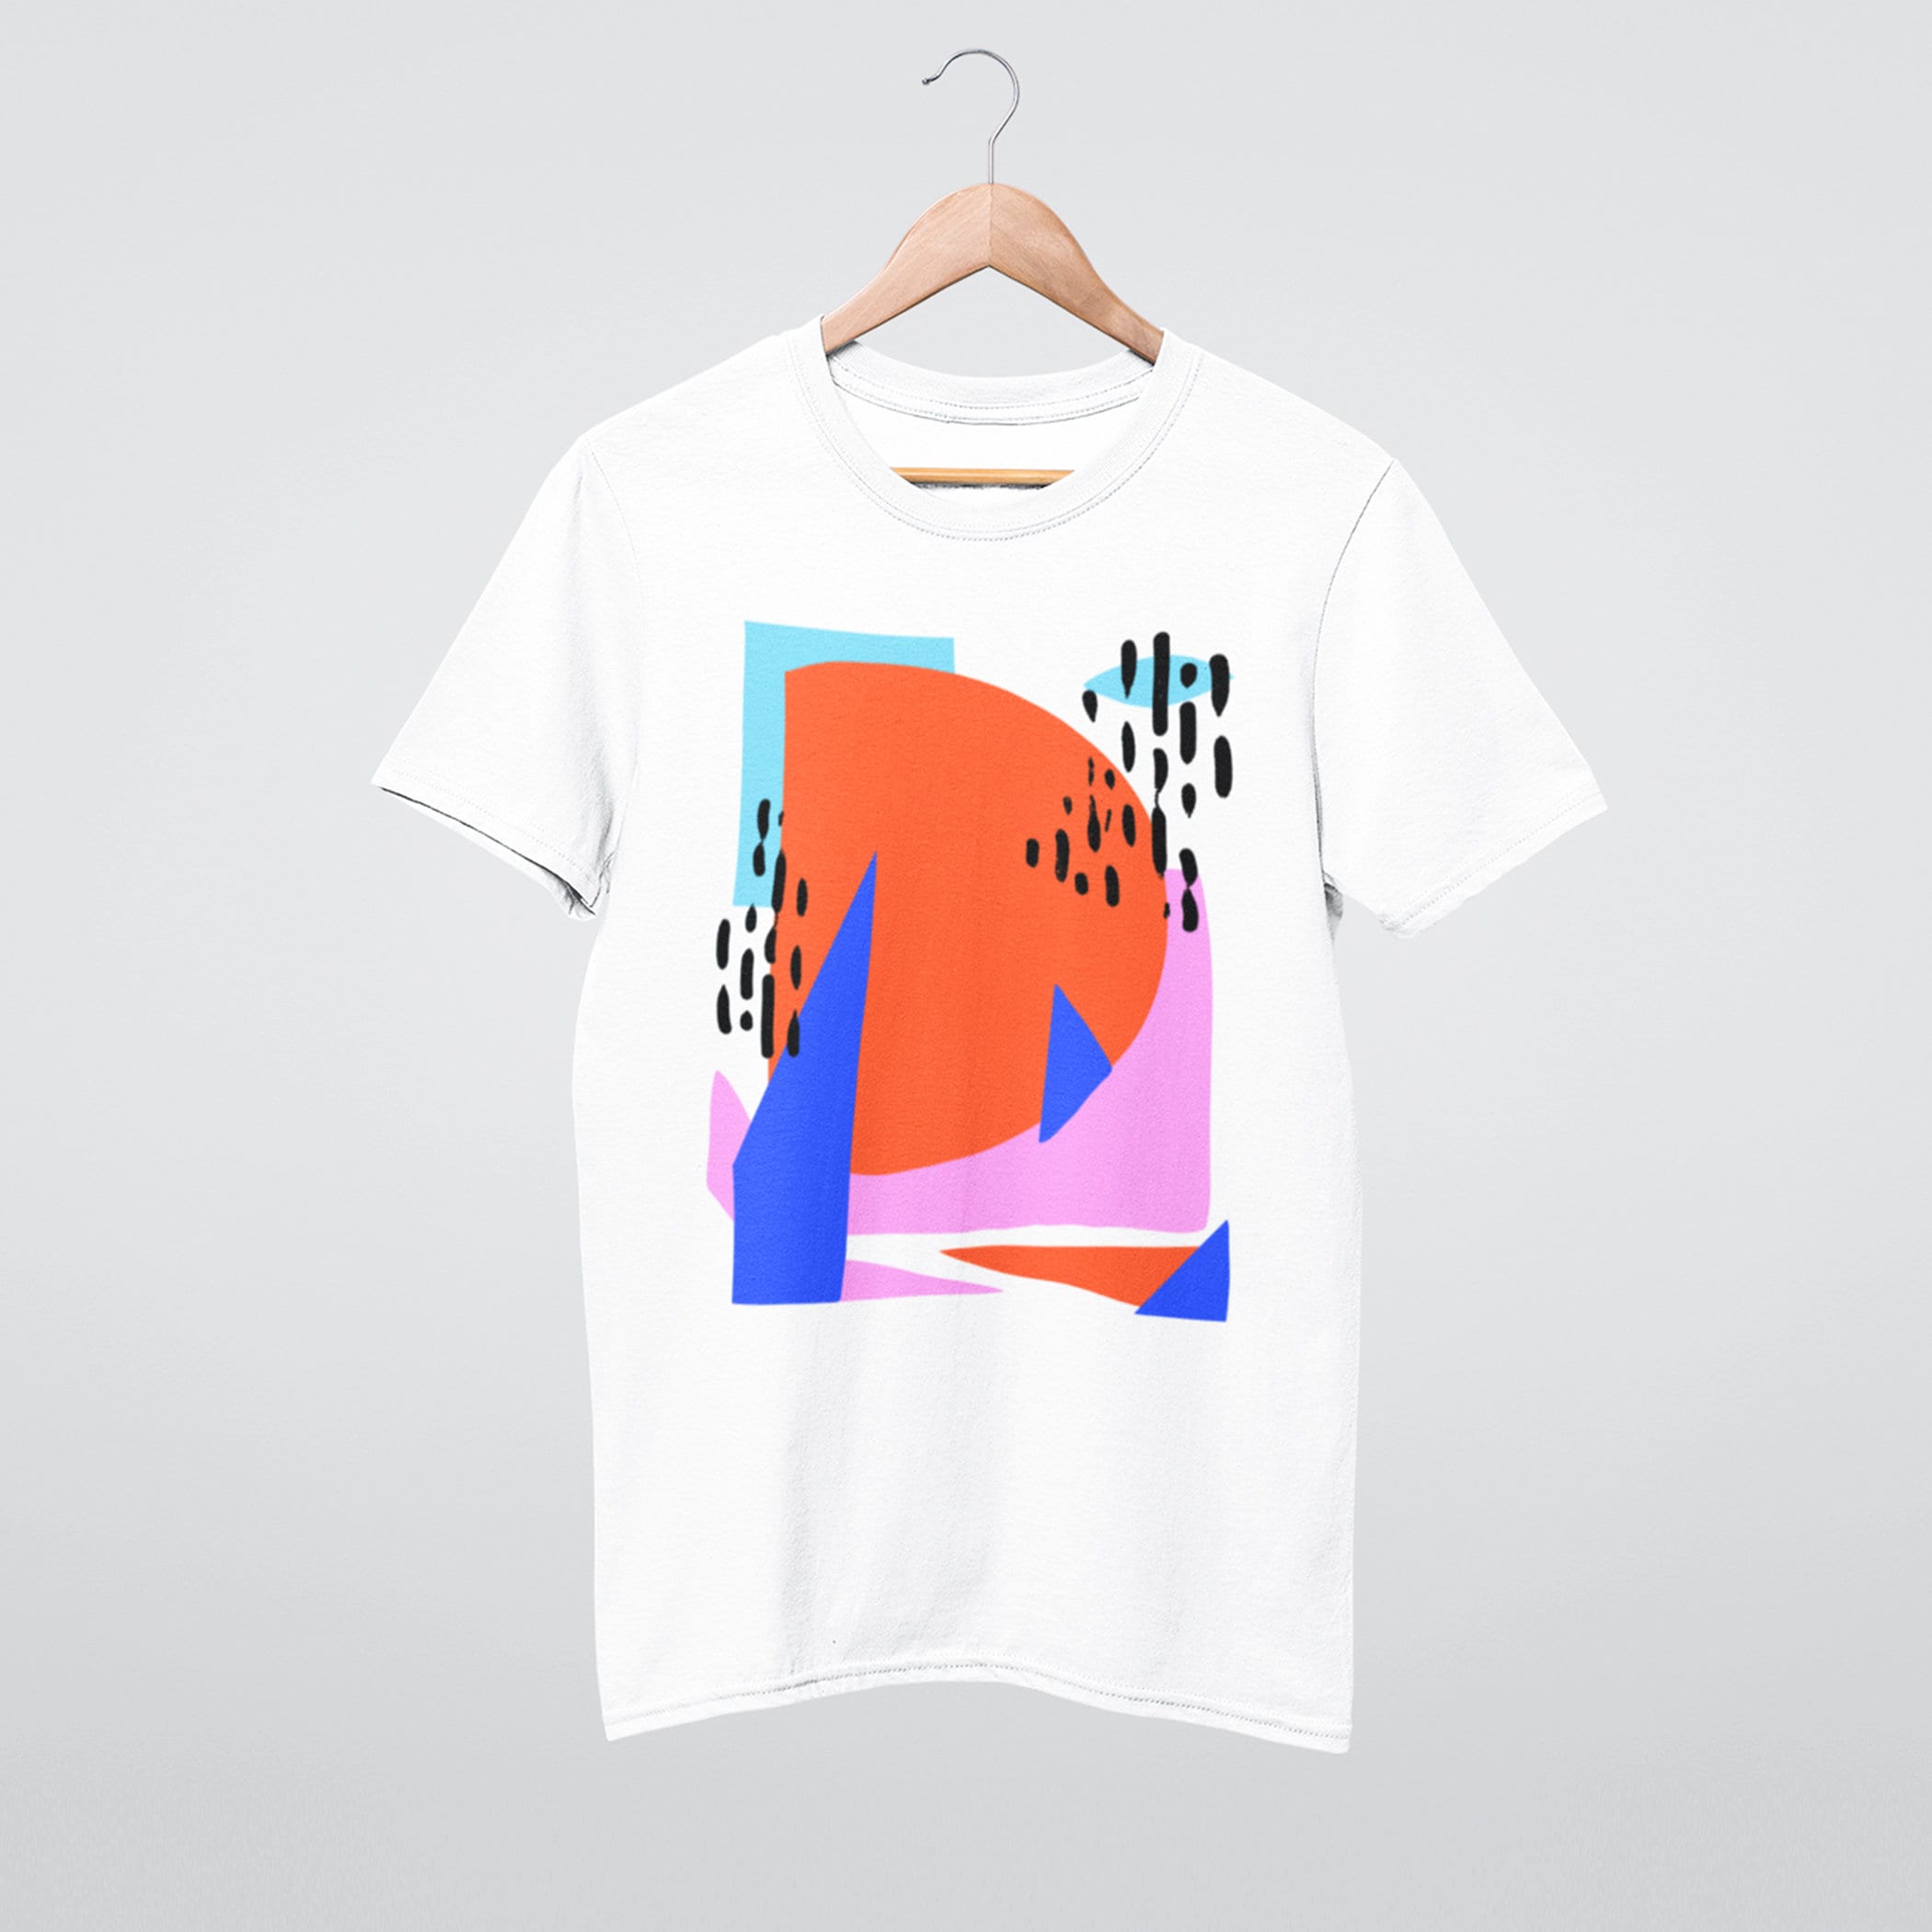 Abstract Tshirt, Unisex Tshirt, Cotton Tshirt, Art Drawing Shirt, Art Tshirt,  Graphic Tshirt, Summer Tshirt, Geometric Shirt, Colorful Shirt - Etsy